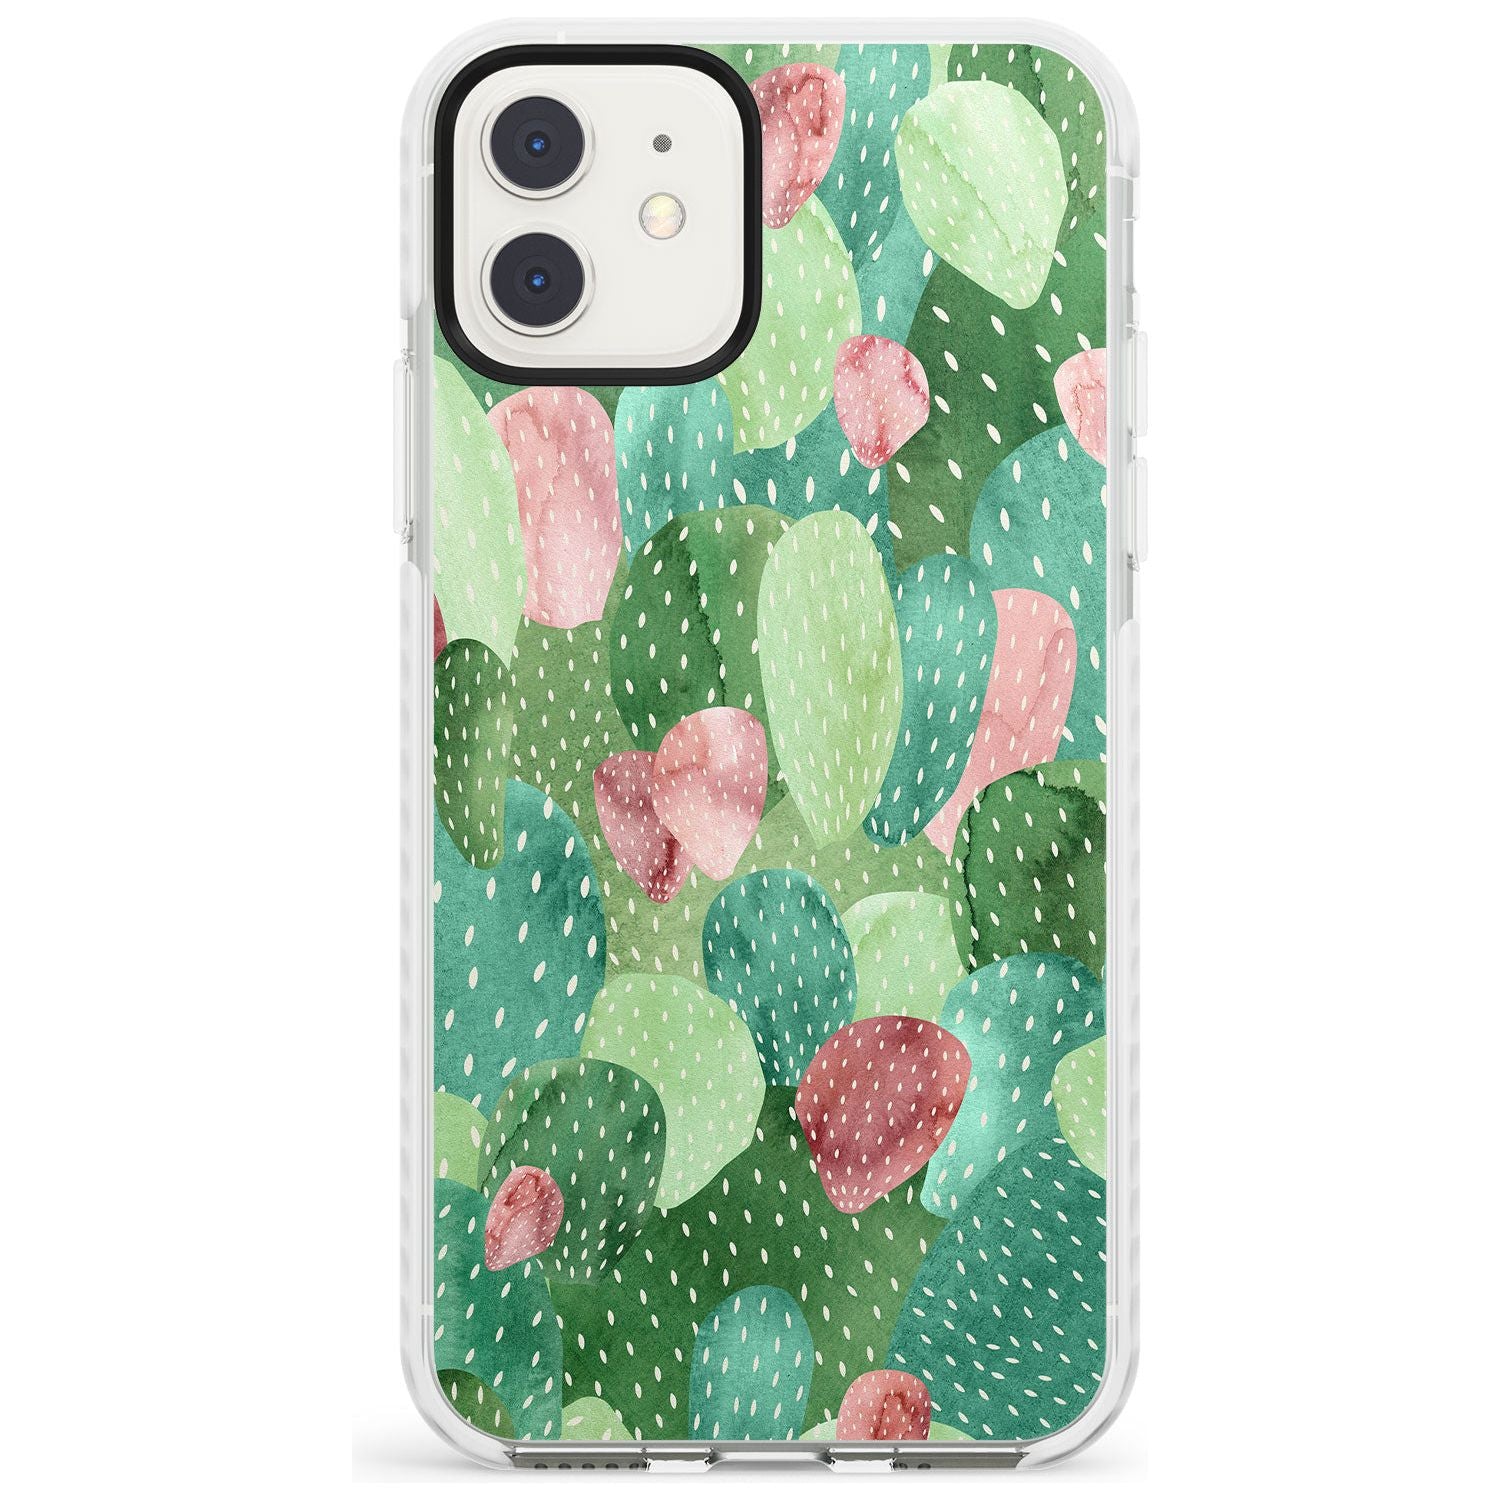 Colourful Cactus Mix Design Impact Phone Case for iPhone 11